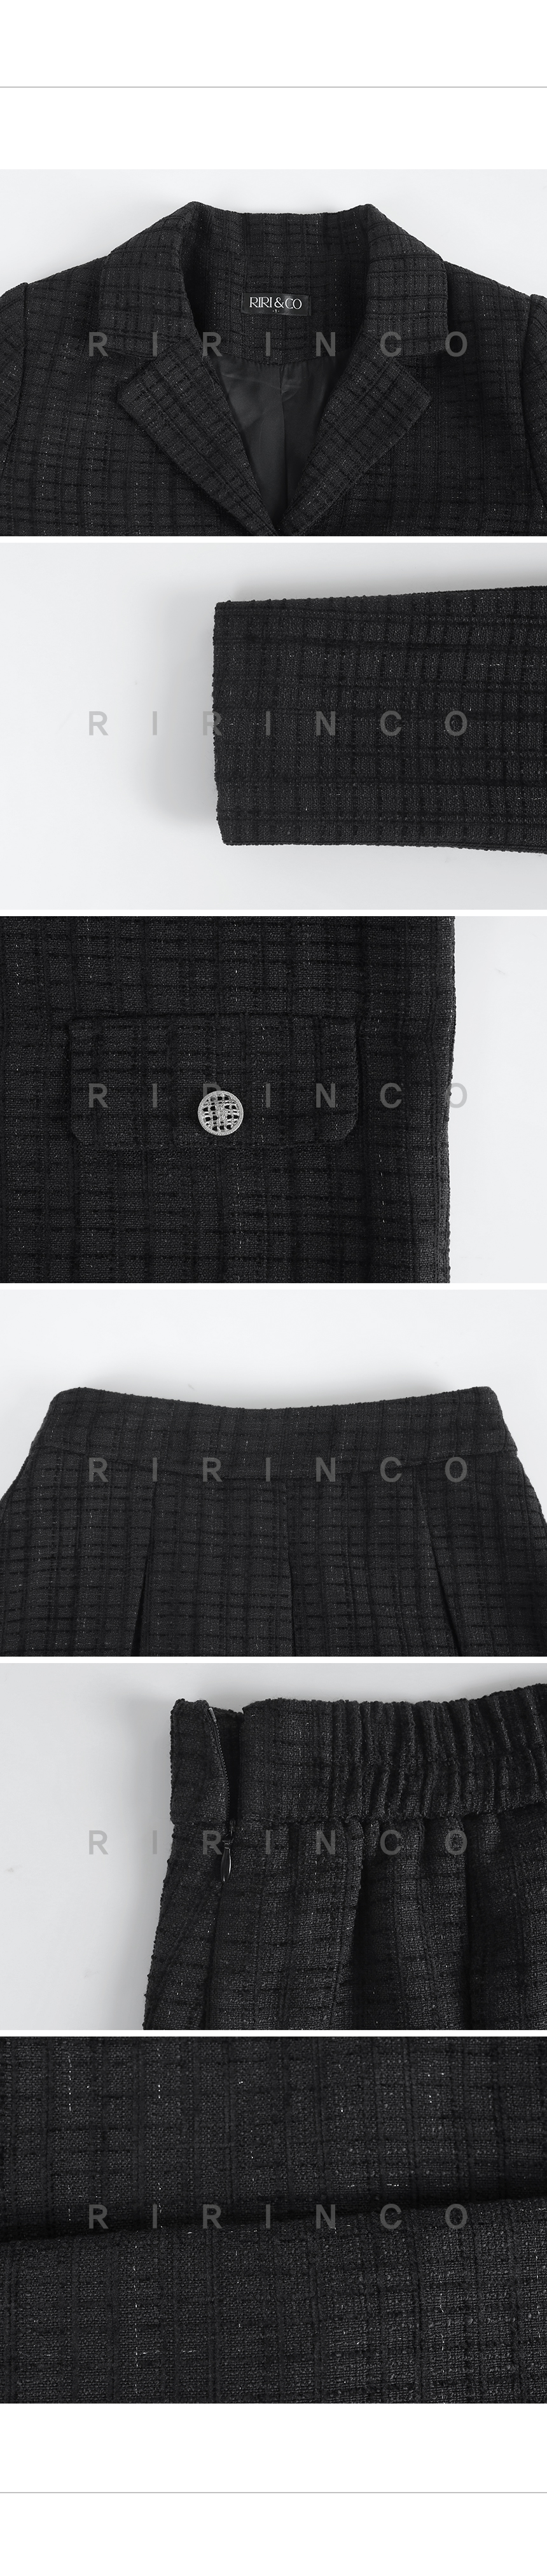 RIRINCO ツイードクロップドジャケット&プリーツスカート上下セット